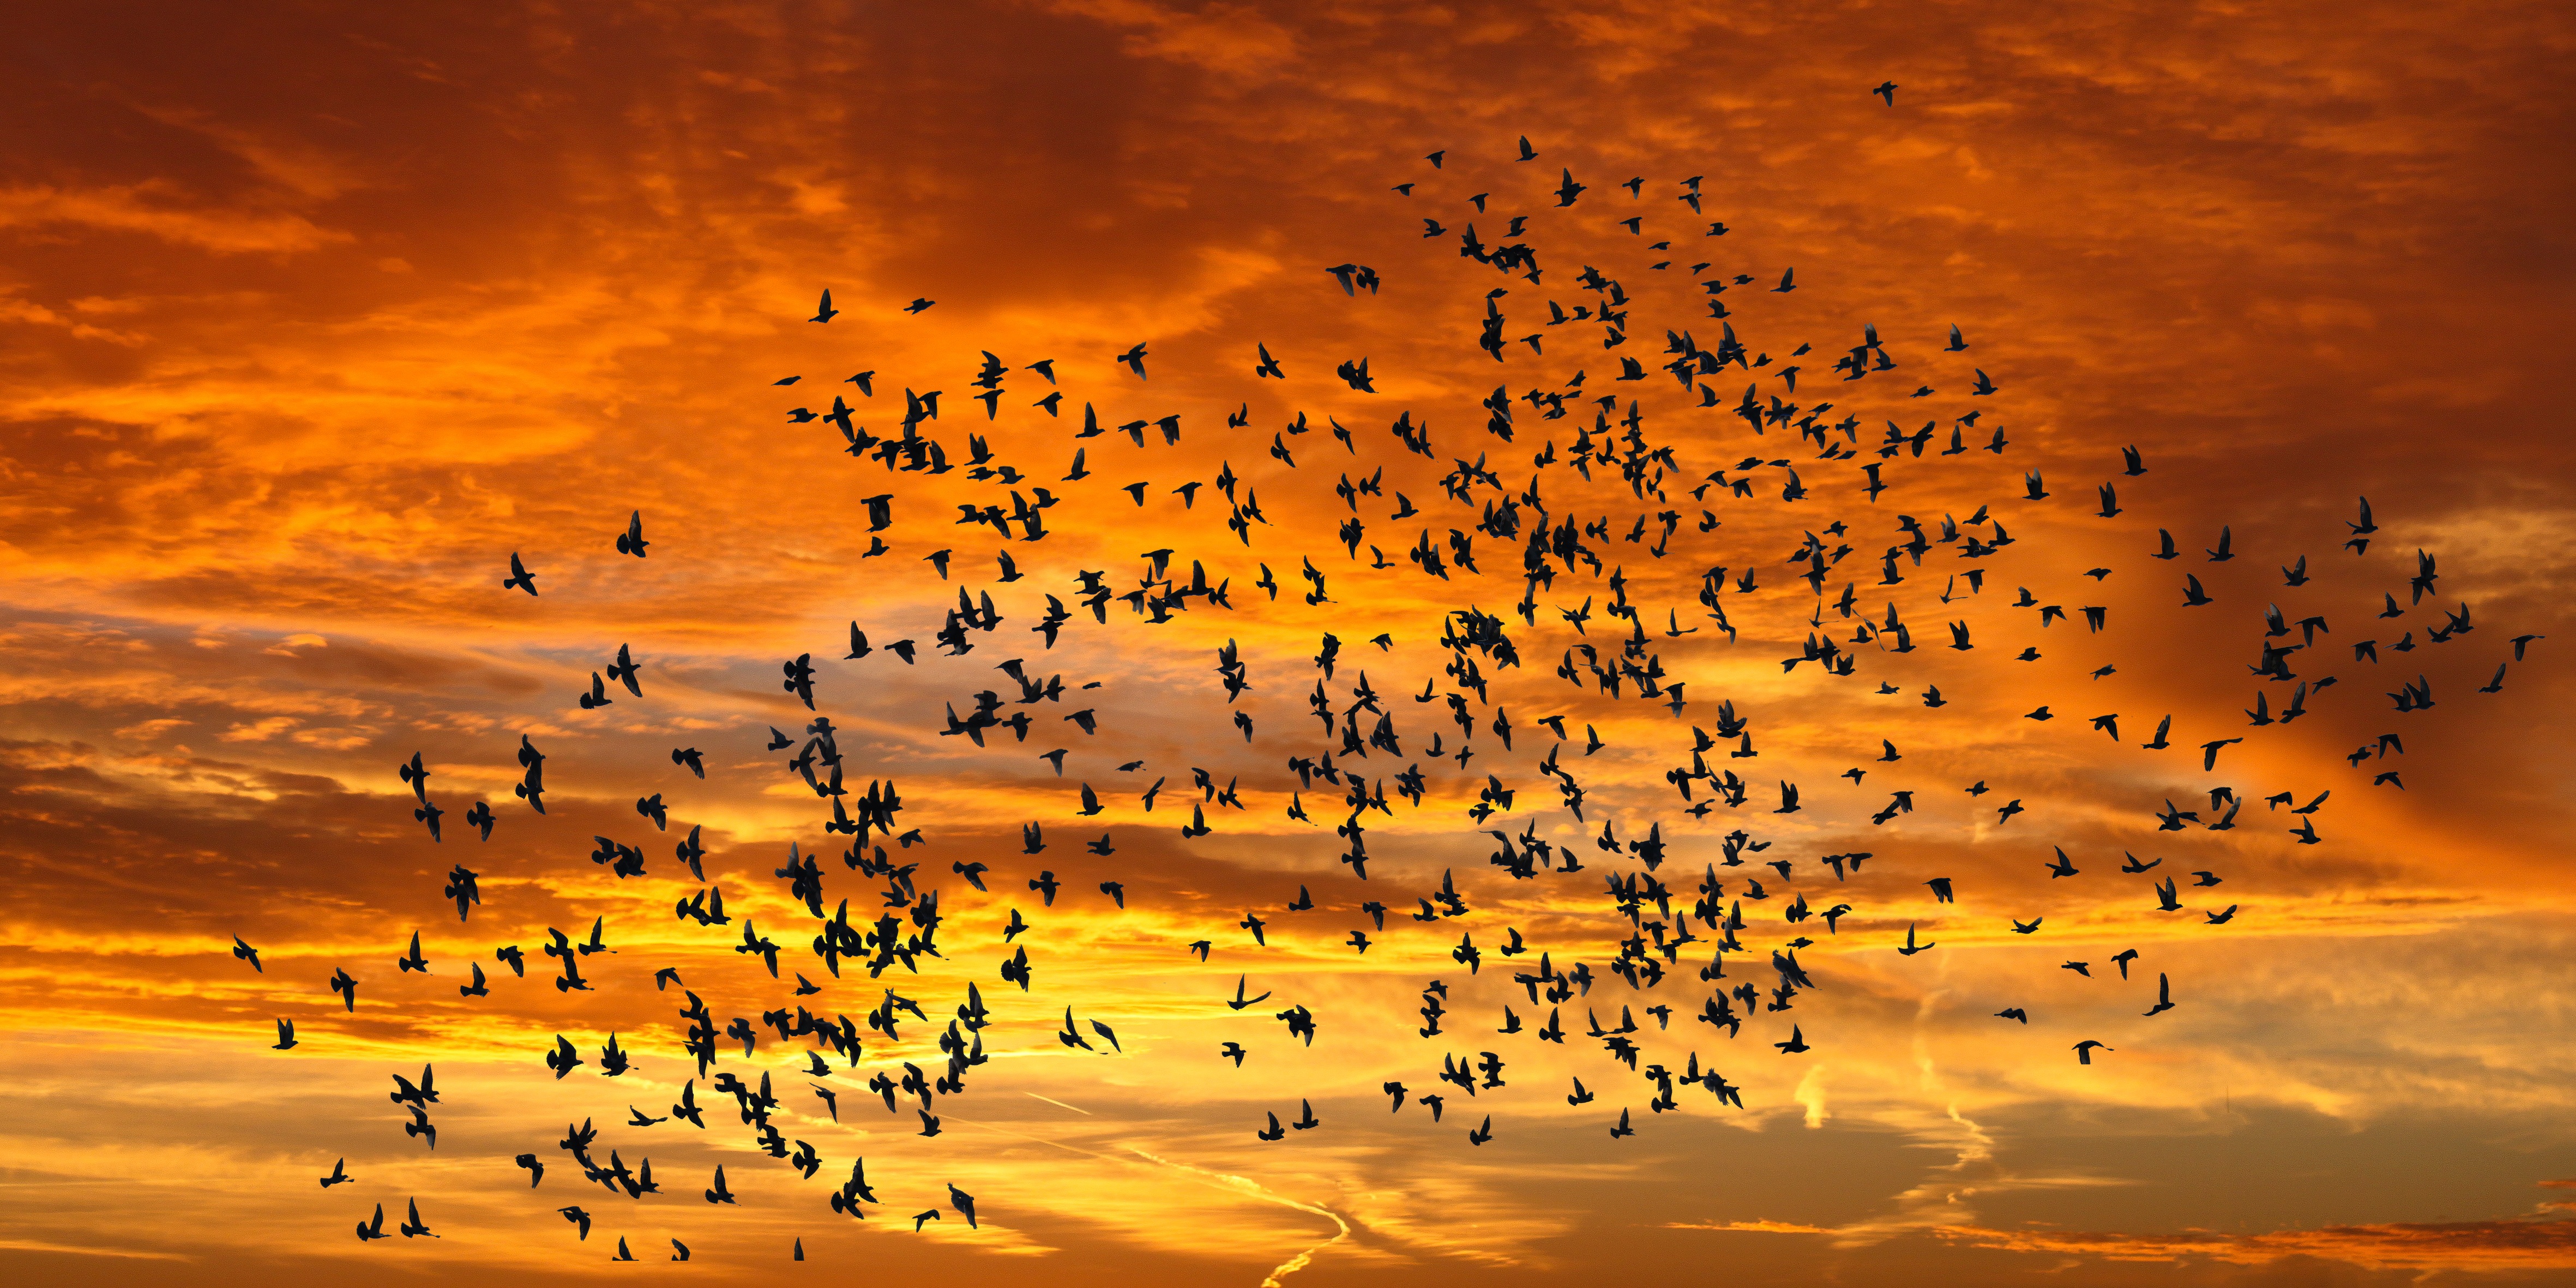 sunset, nature, birds, sky, clouds, silhouettes, flight Desktop home screen Wallpaper